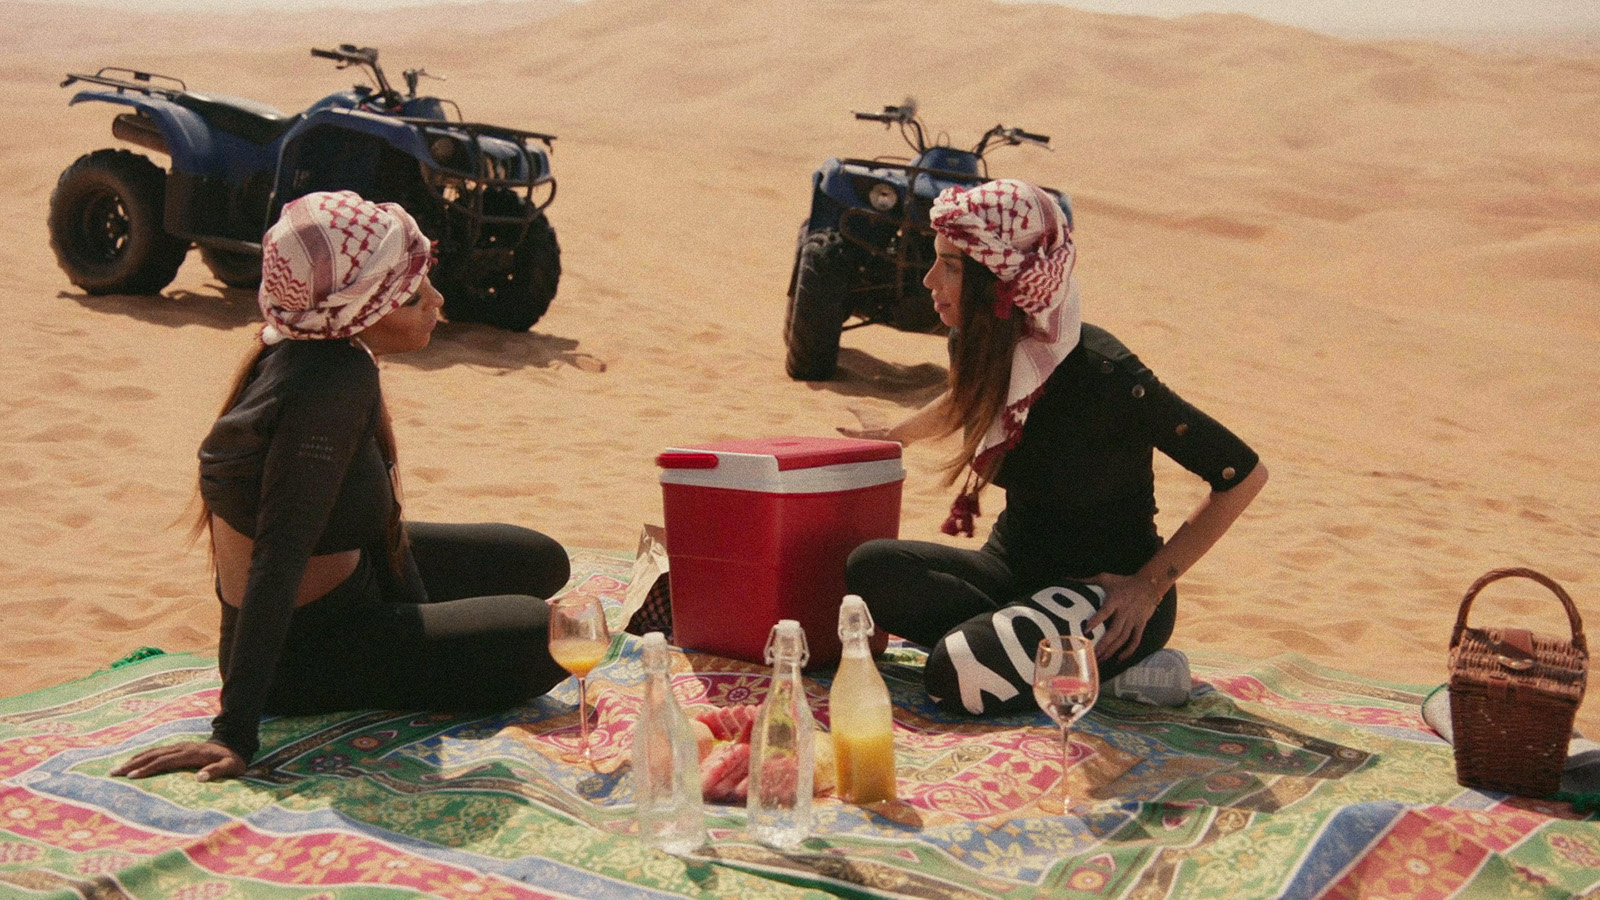 Les Real Housewives de Dubai S01E10 saison 1 épisode 10 Voyage entre filles